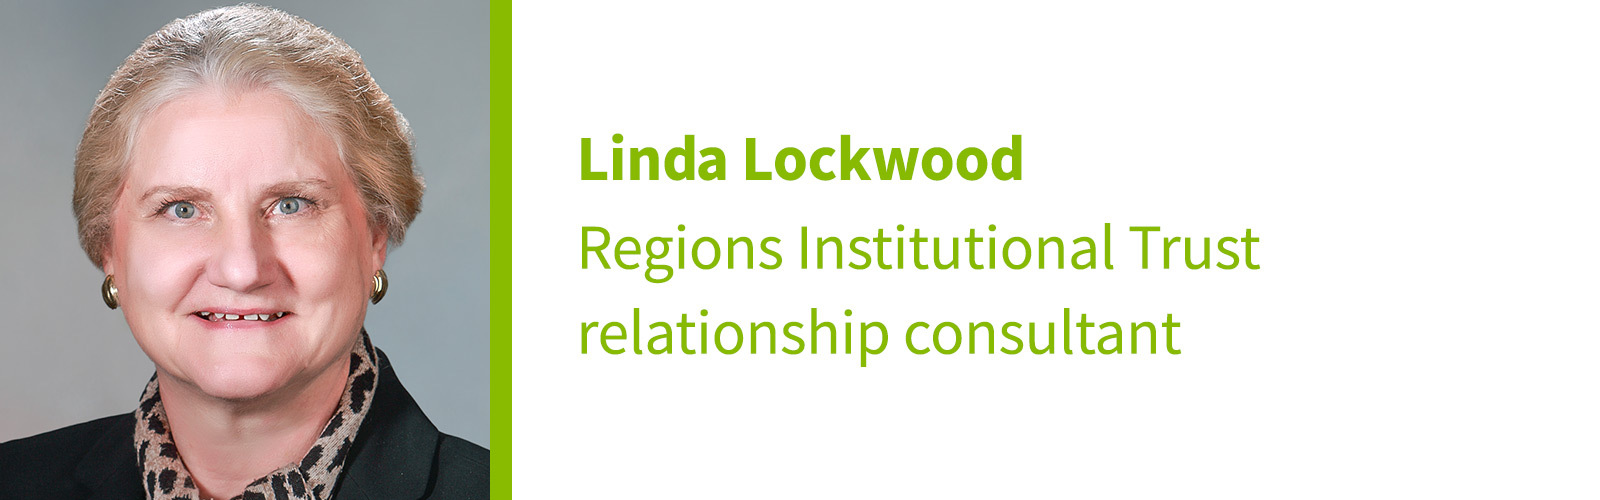 Linda Lockwood